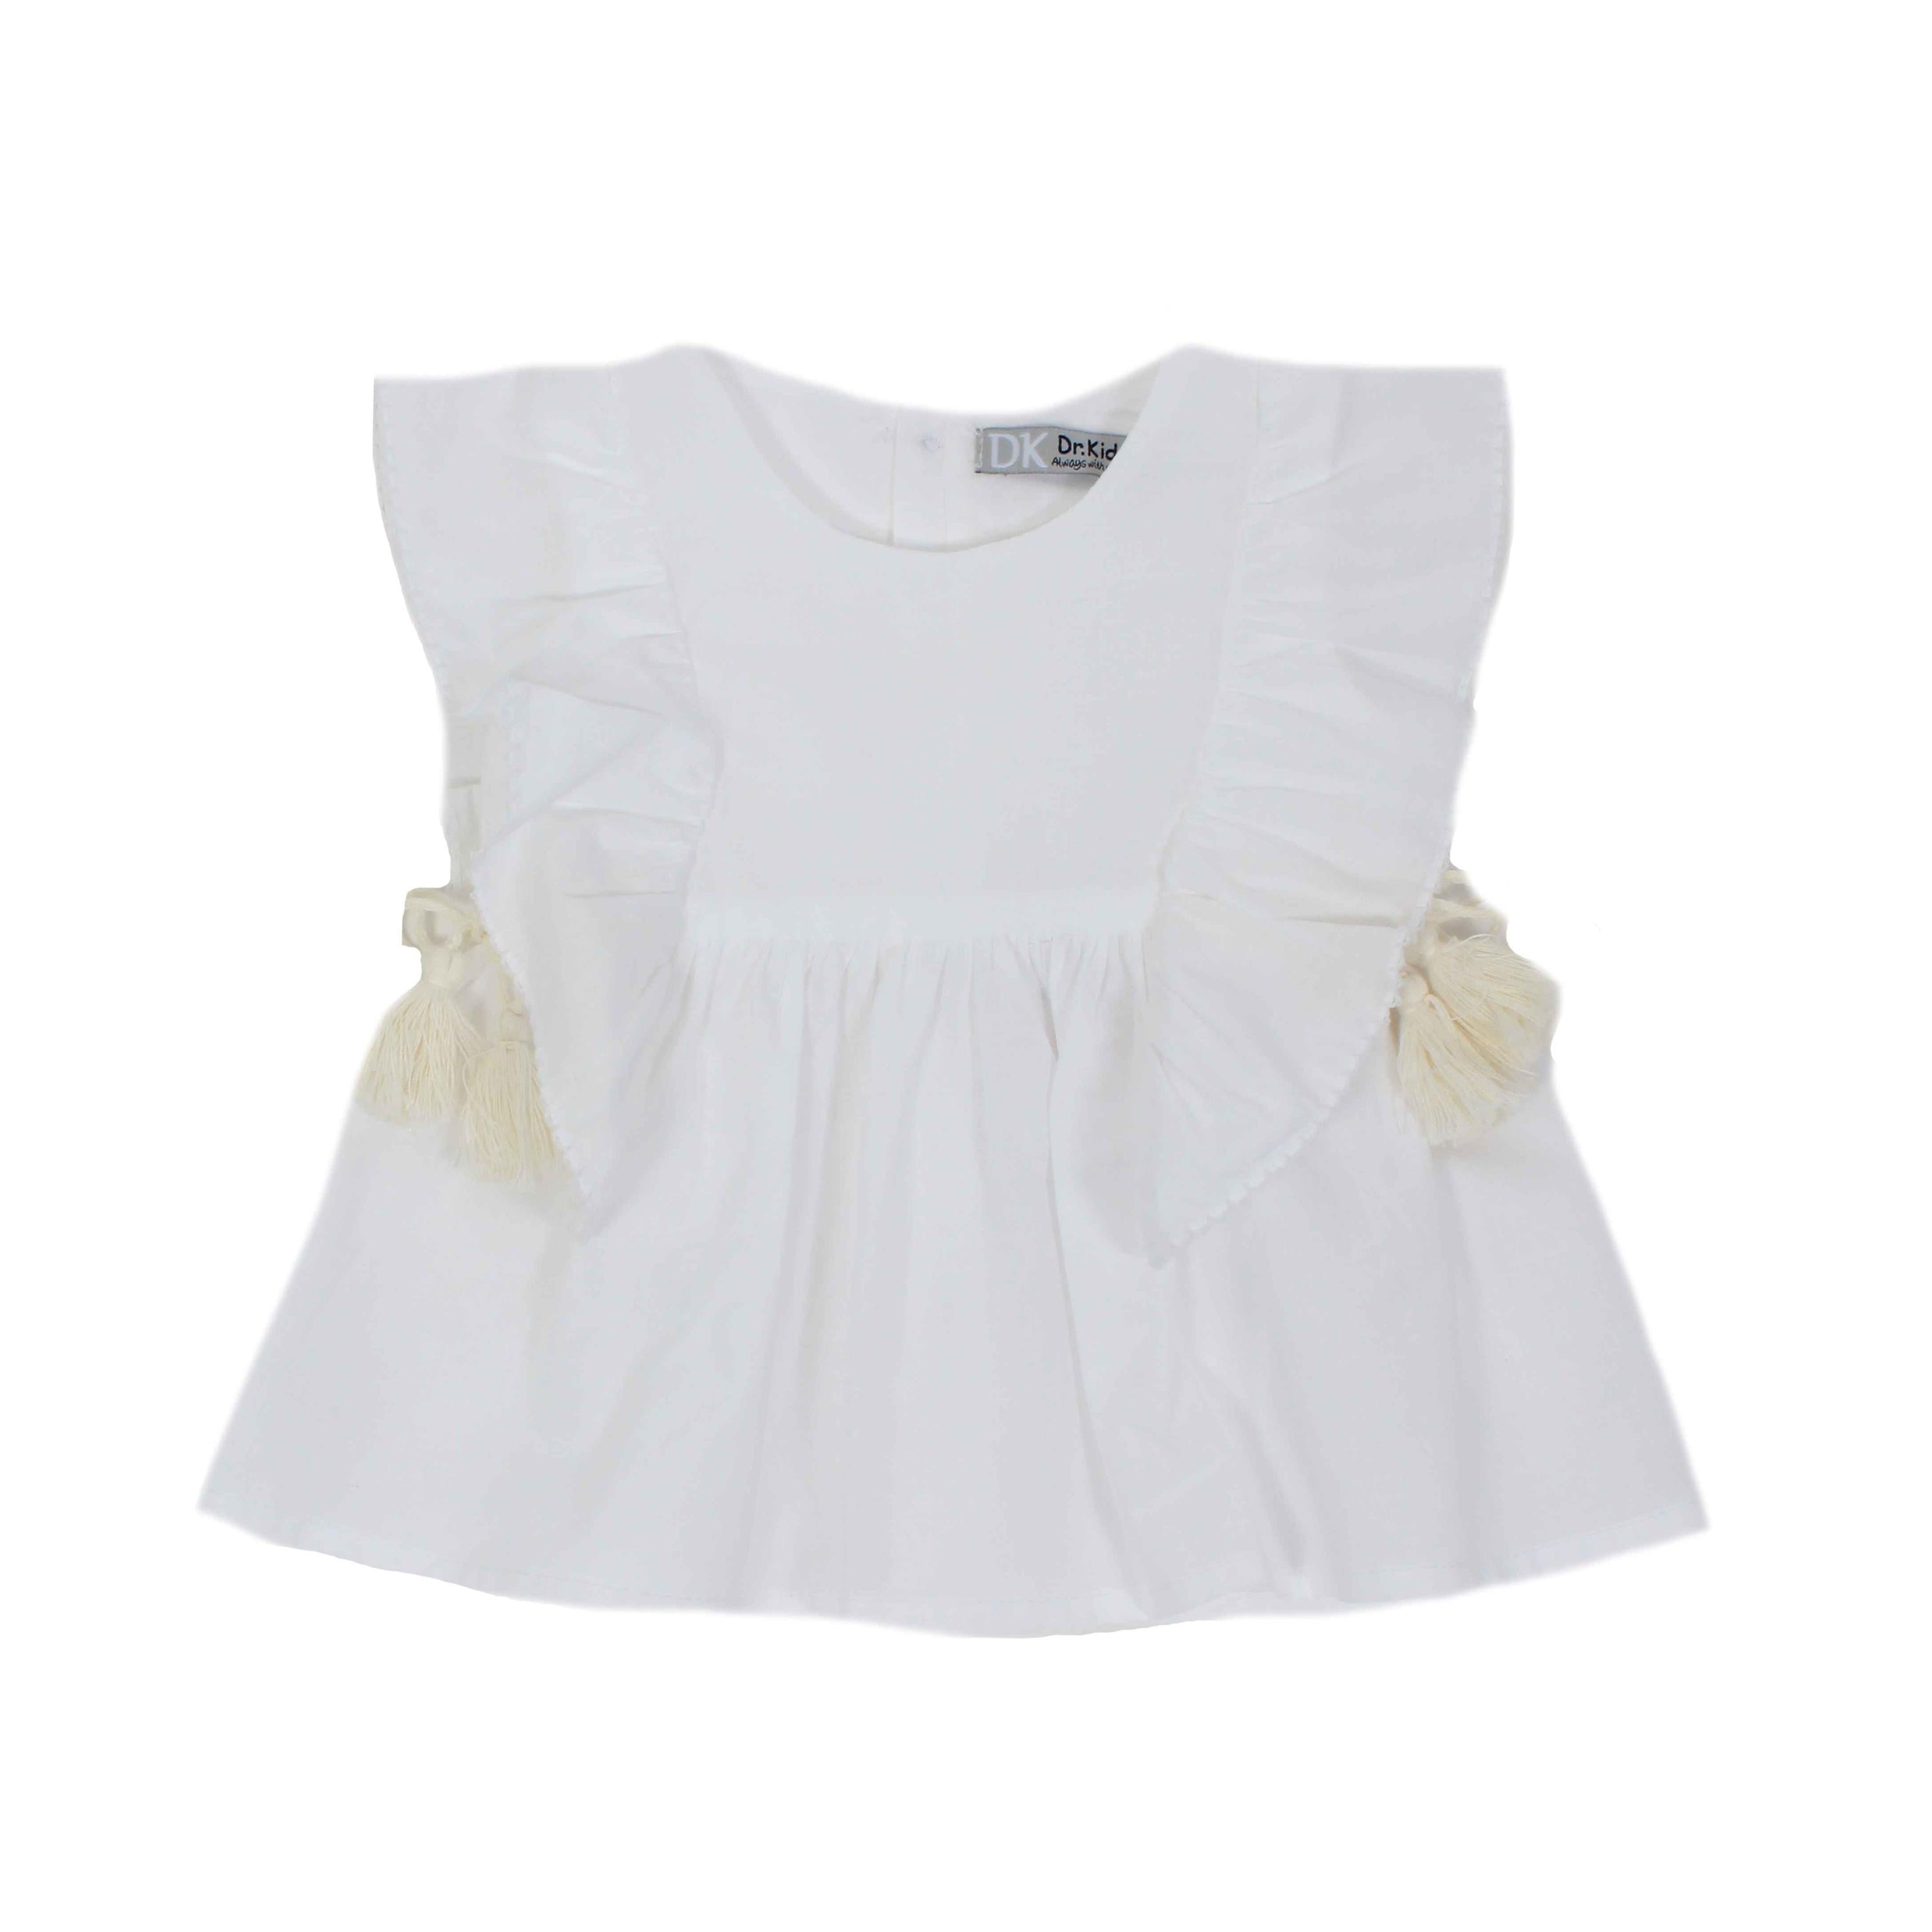 Camicia In Cotone Con Lacci e Nappine Bianco Bambina DR KIDS DK354 - DR.KID - LuxuryKids